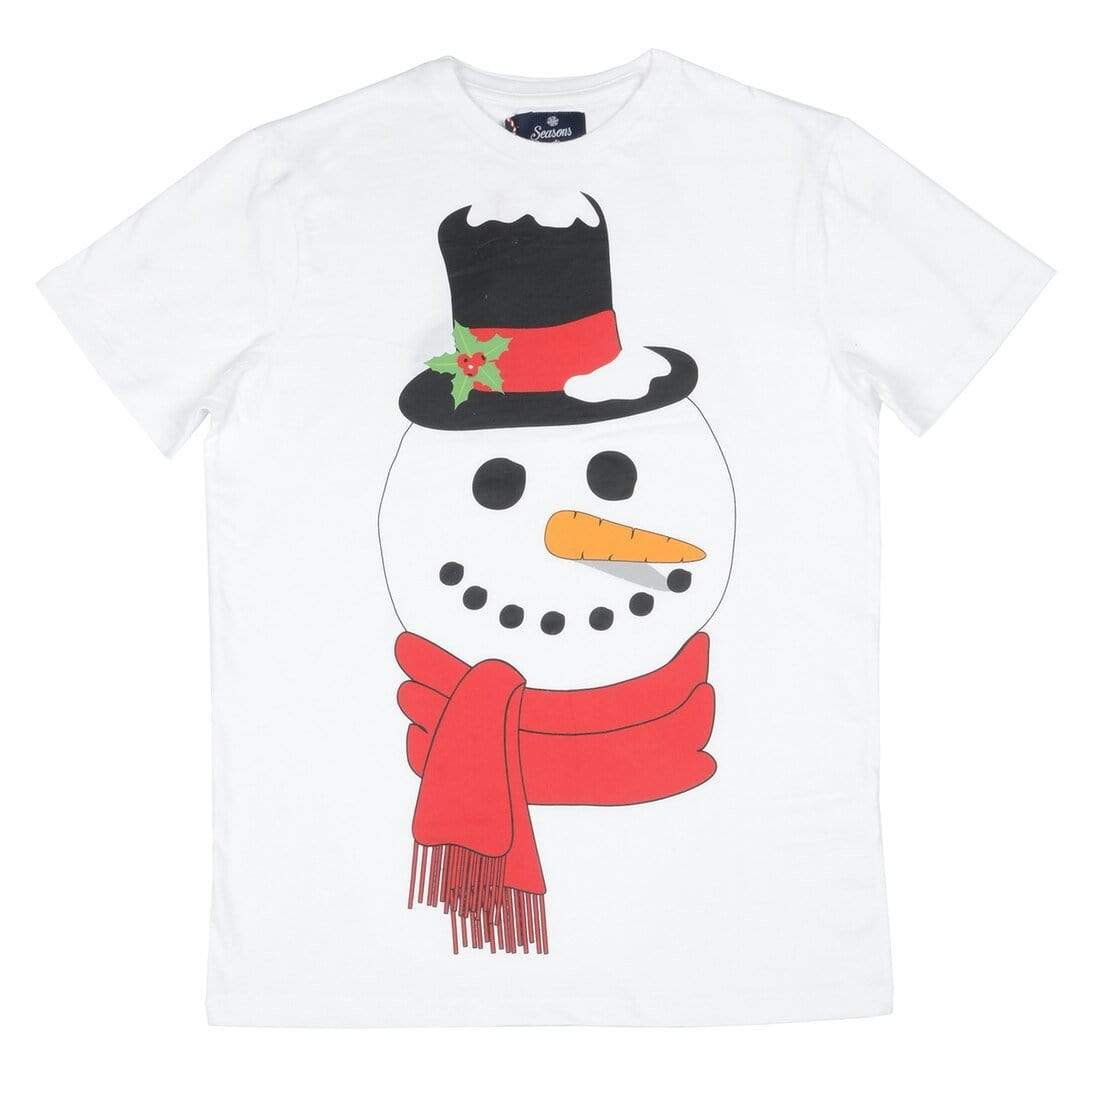 Mr Crimbo Mens Crew White Snowman Print Christmas T-Shirt - MrCrimbo.co.uk -VISMW06037WHT_A - S -crew tshirt